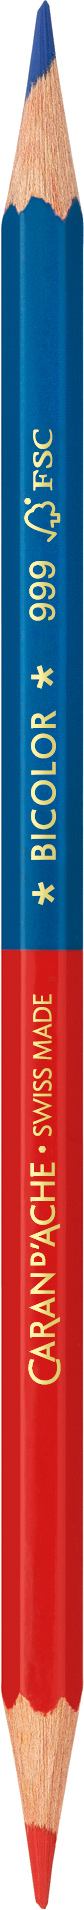 CARAN D'ACHE Crayon de couleur Bicolor 999.300 bleu/rouge bleu/rouge